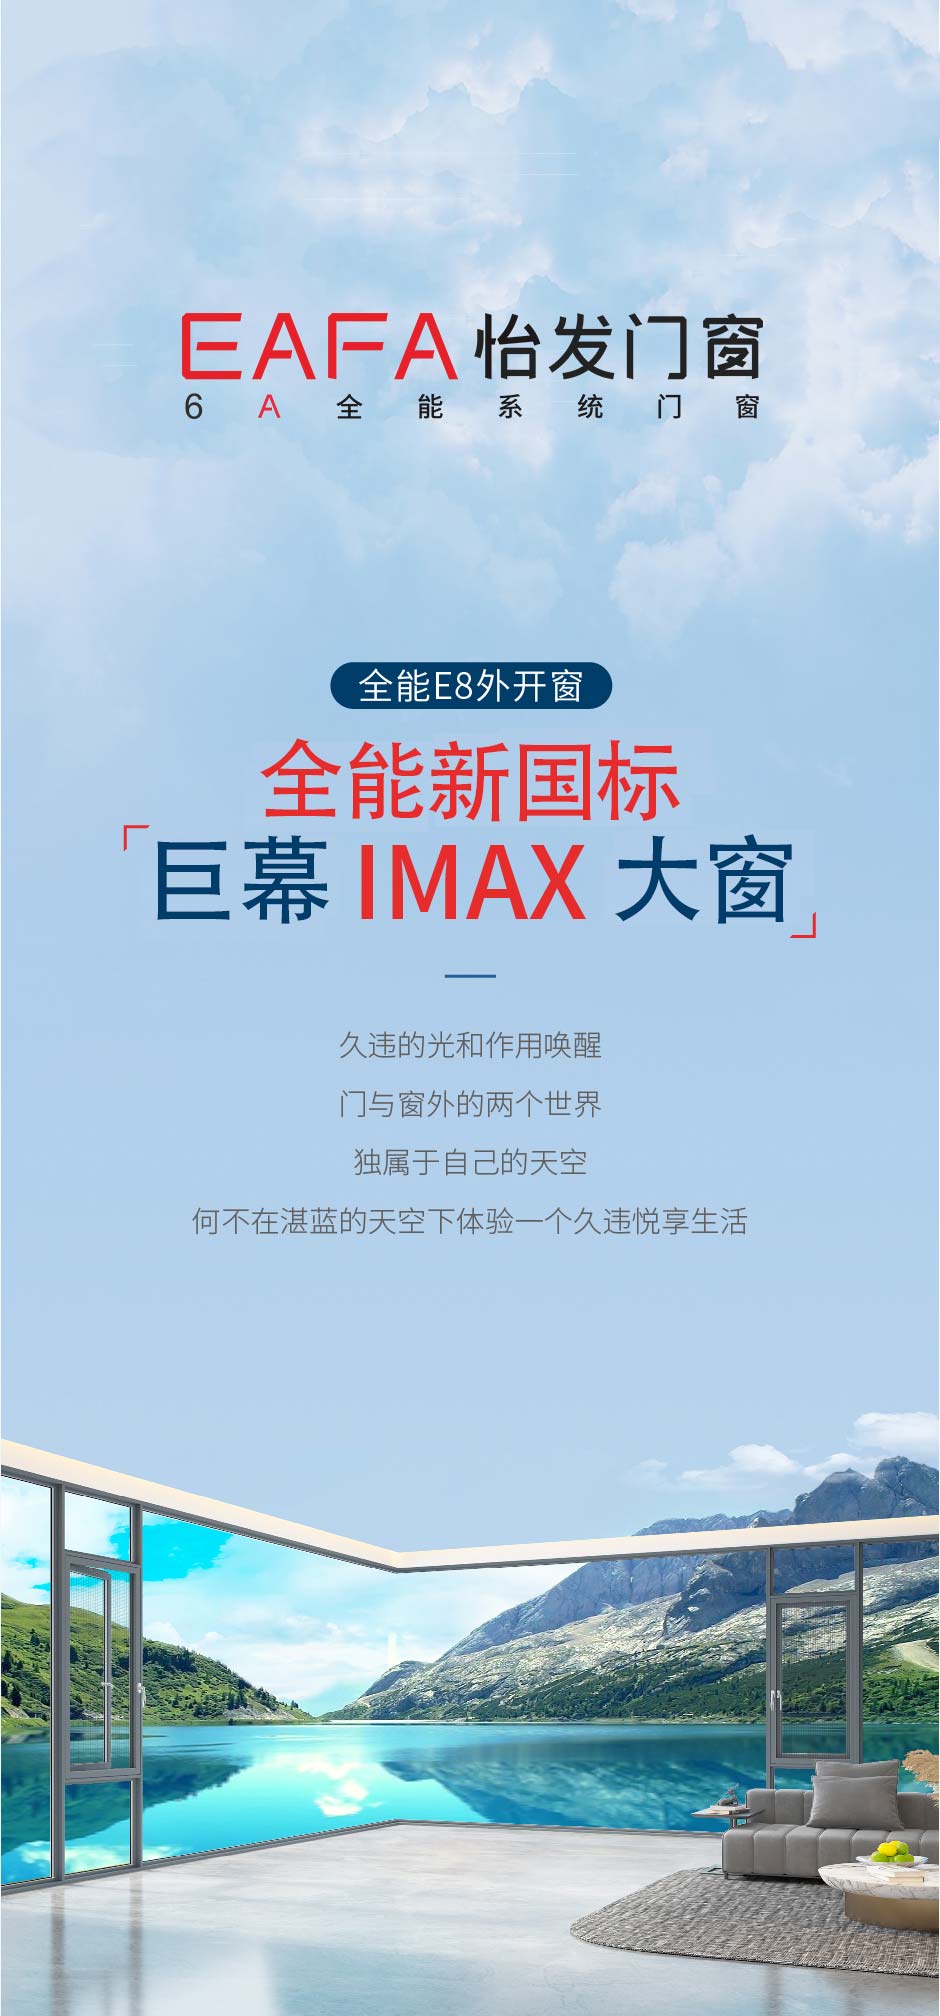 新品上市 | 威利斯人娱乐棋牌网站巨幕IMAX大窗 实力演绎更多可能